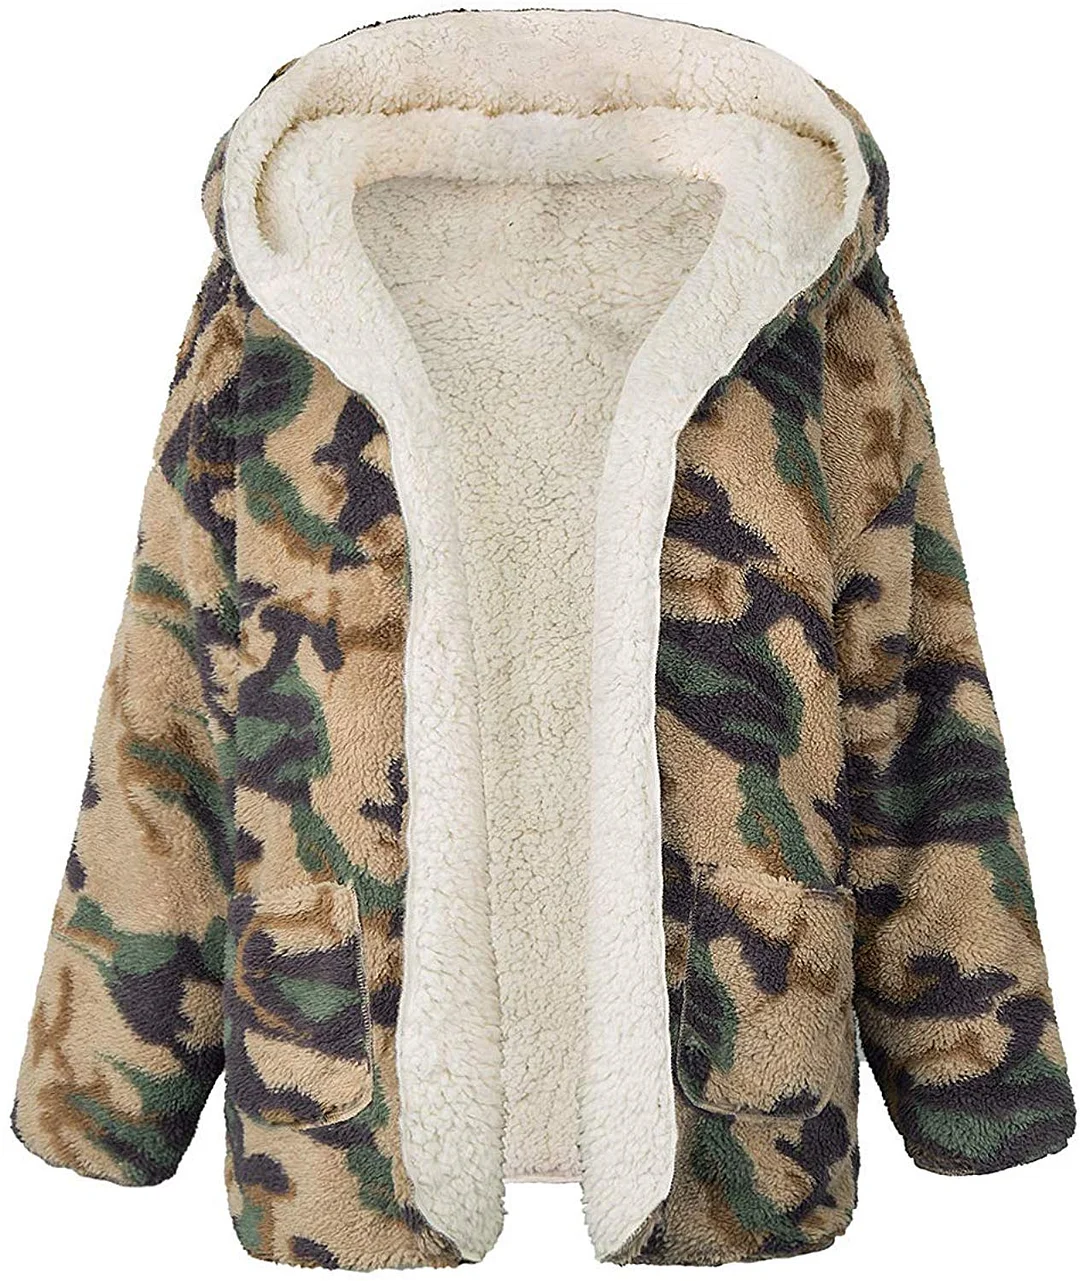 Women’s Fleece Hooded Sherpa Jacket- Reversible Open Front Long Sleeve Faux Shearling Winter Coats with Pockets